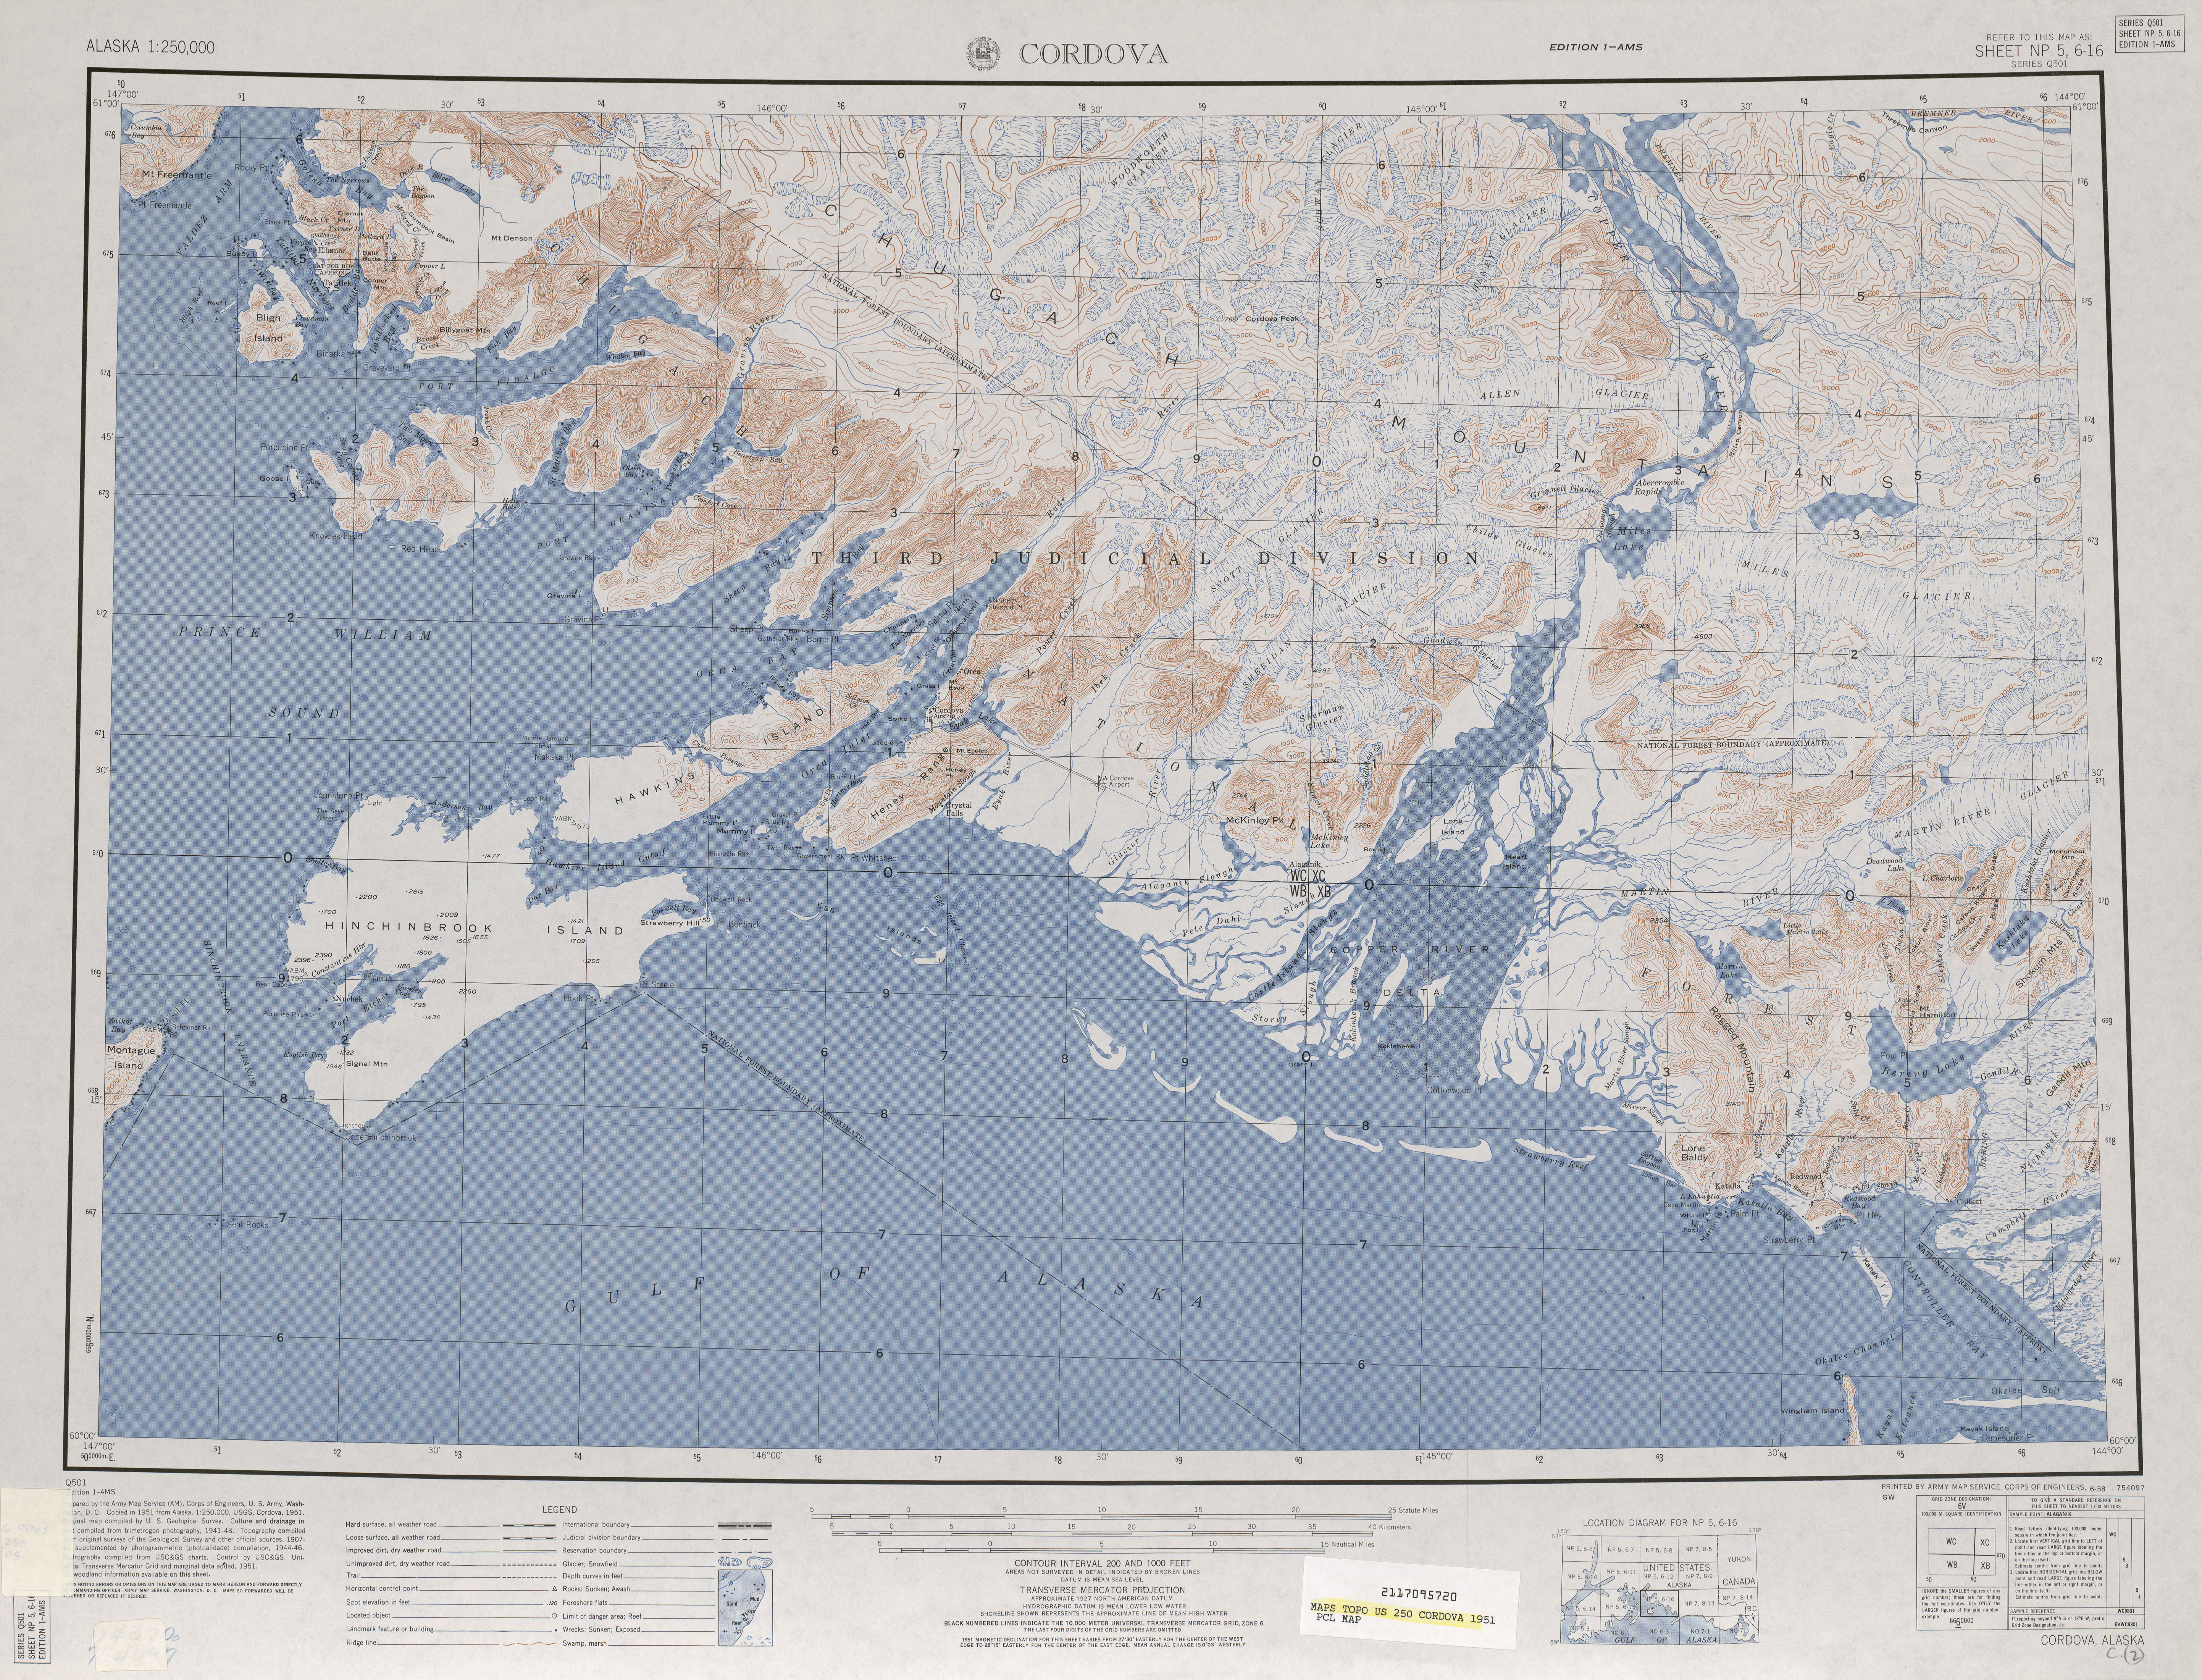 Hoja Cordova del Mapa Topográfico de los Estados Unidos 1951